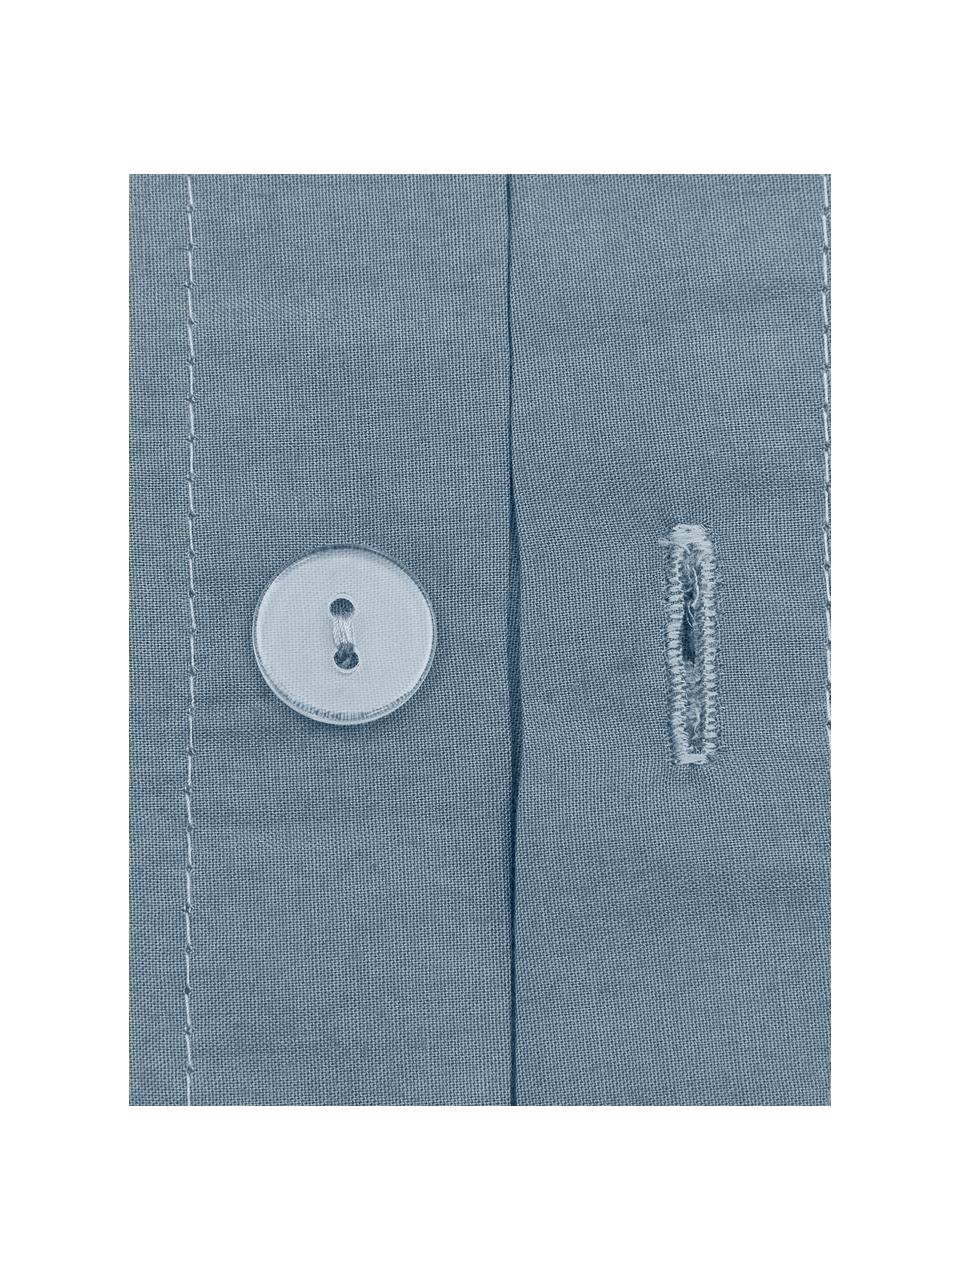 Pościel z perkalu Elsie, Niebieski, 200 x 200 cm + 2 poduszki 80 x 80 cm